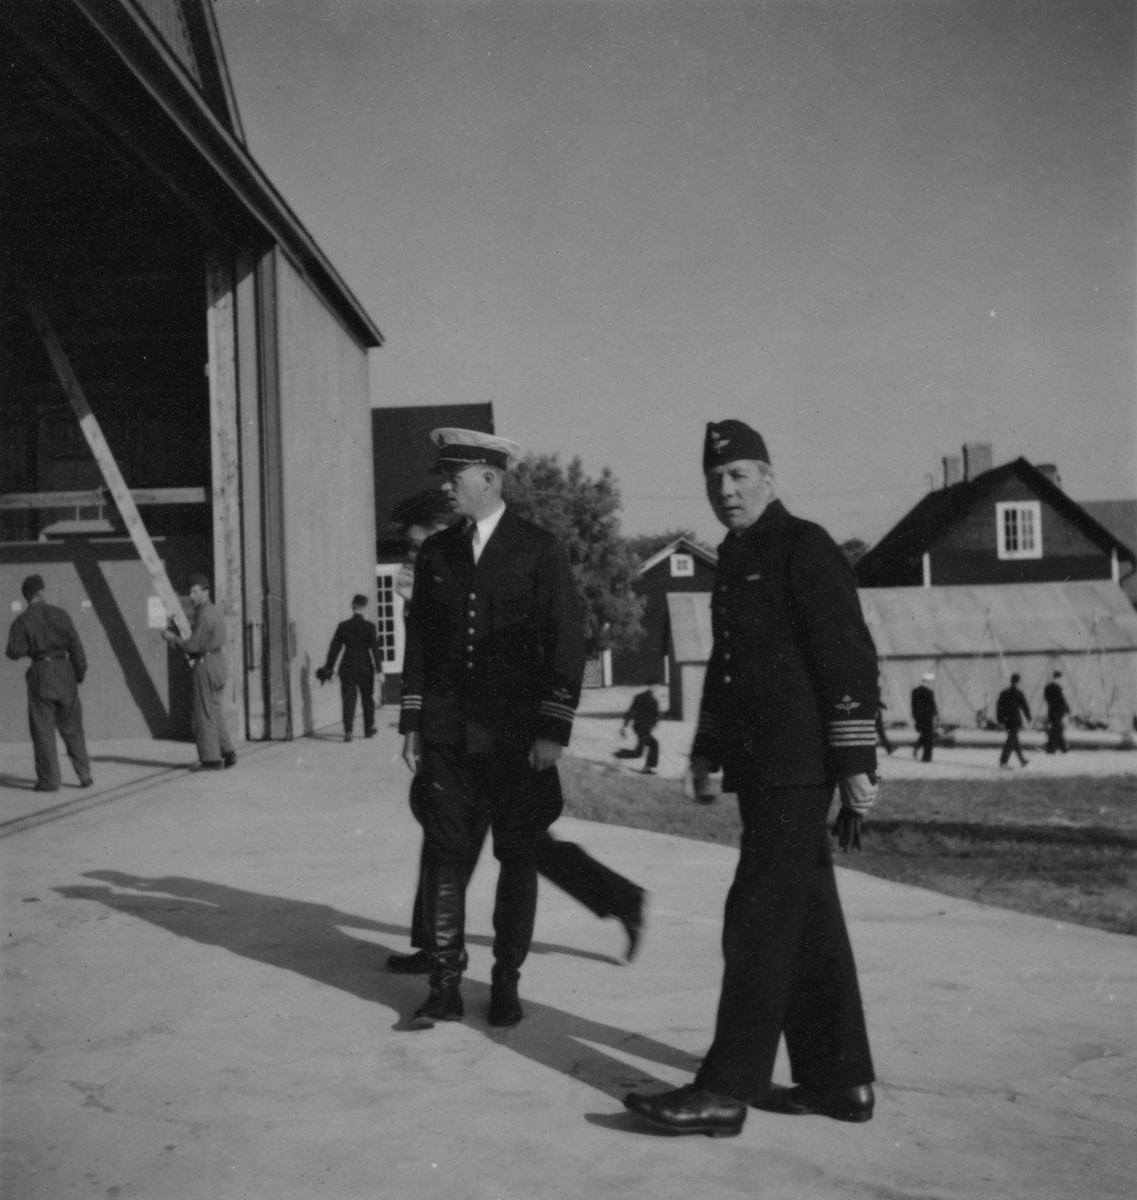 Chefen för F 2 Roslagens flygflottilj, Herman Sundin, inspekterar marinspaningskursen på Fårösund, 1938. Manskapet lediga och återgår till arbetet.